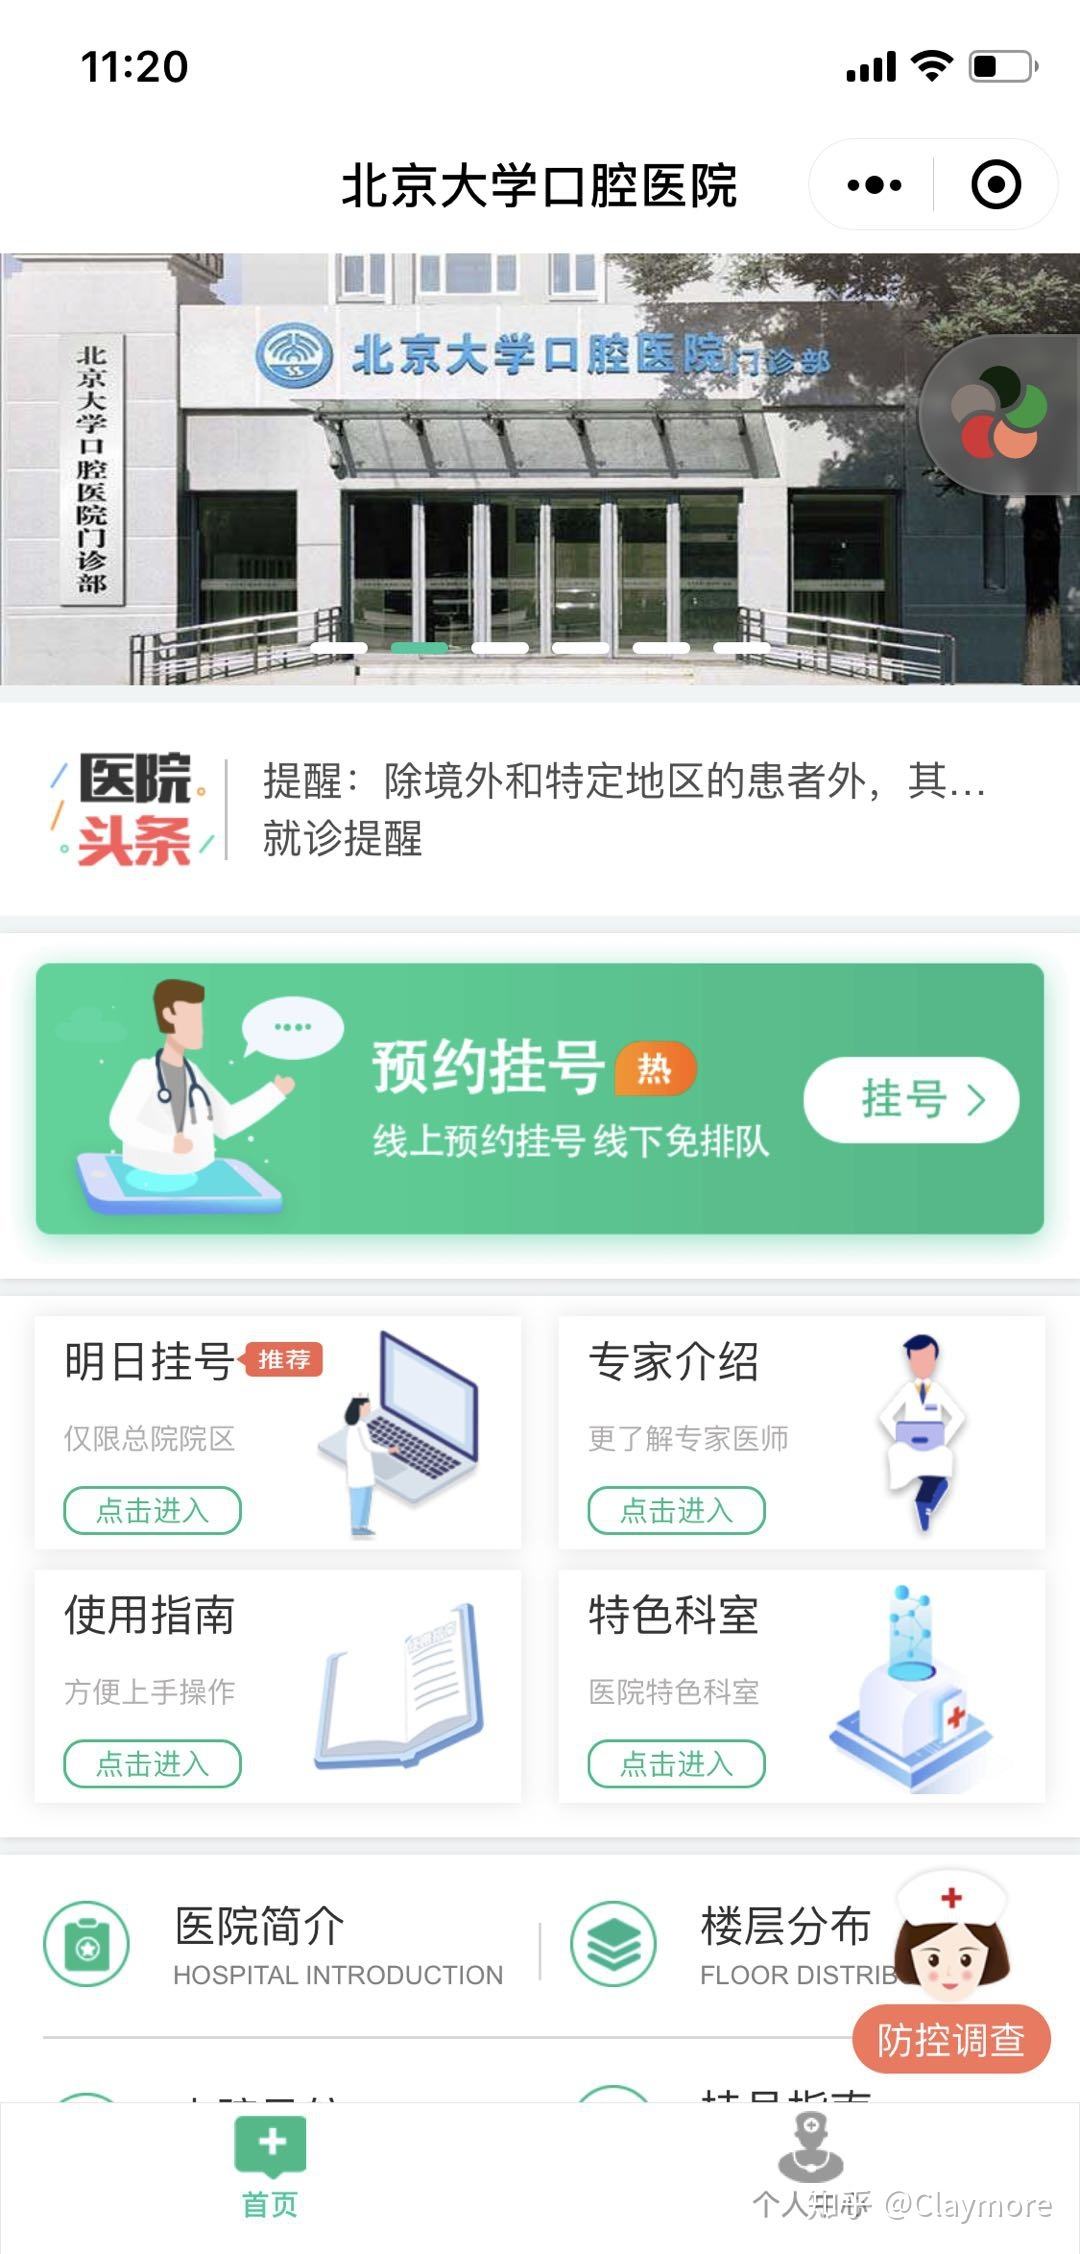 关于北京大学口腔医院网上预约挂号，预约成功再收费的信息